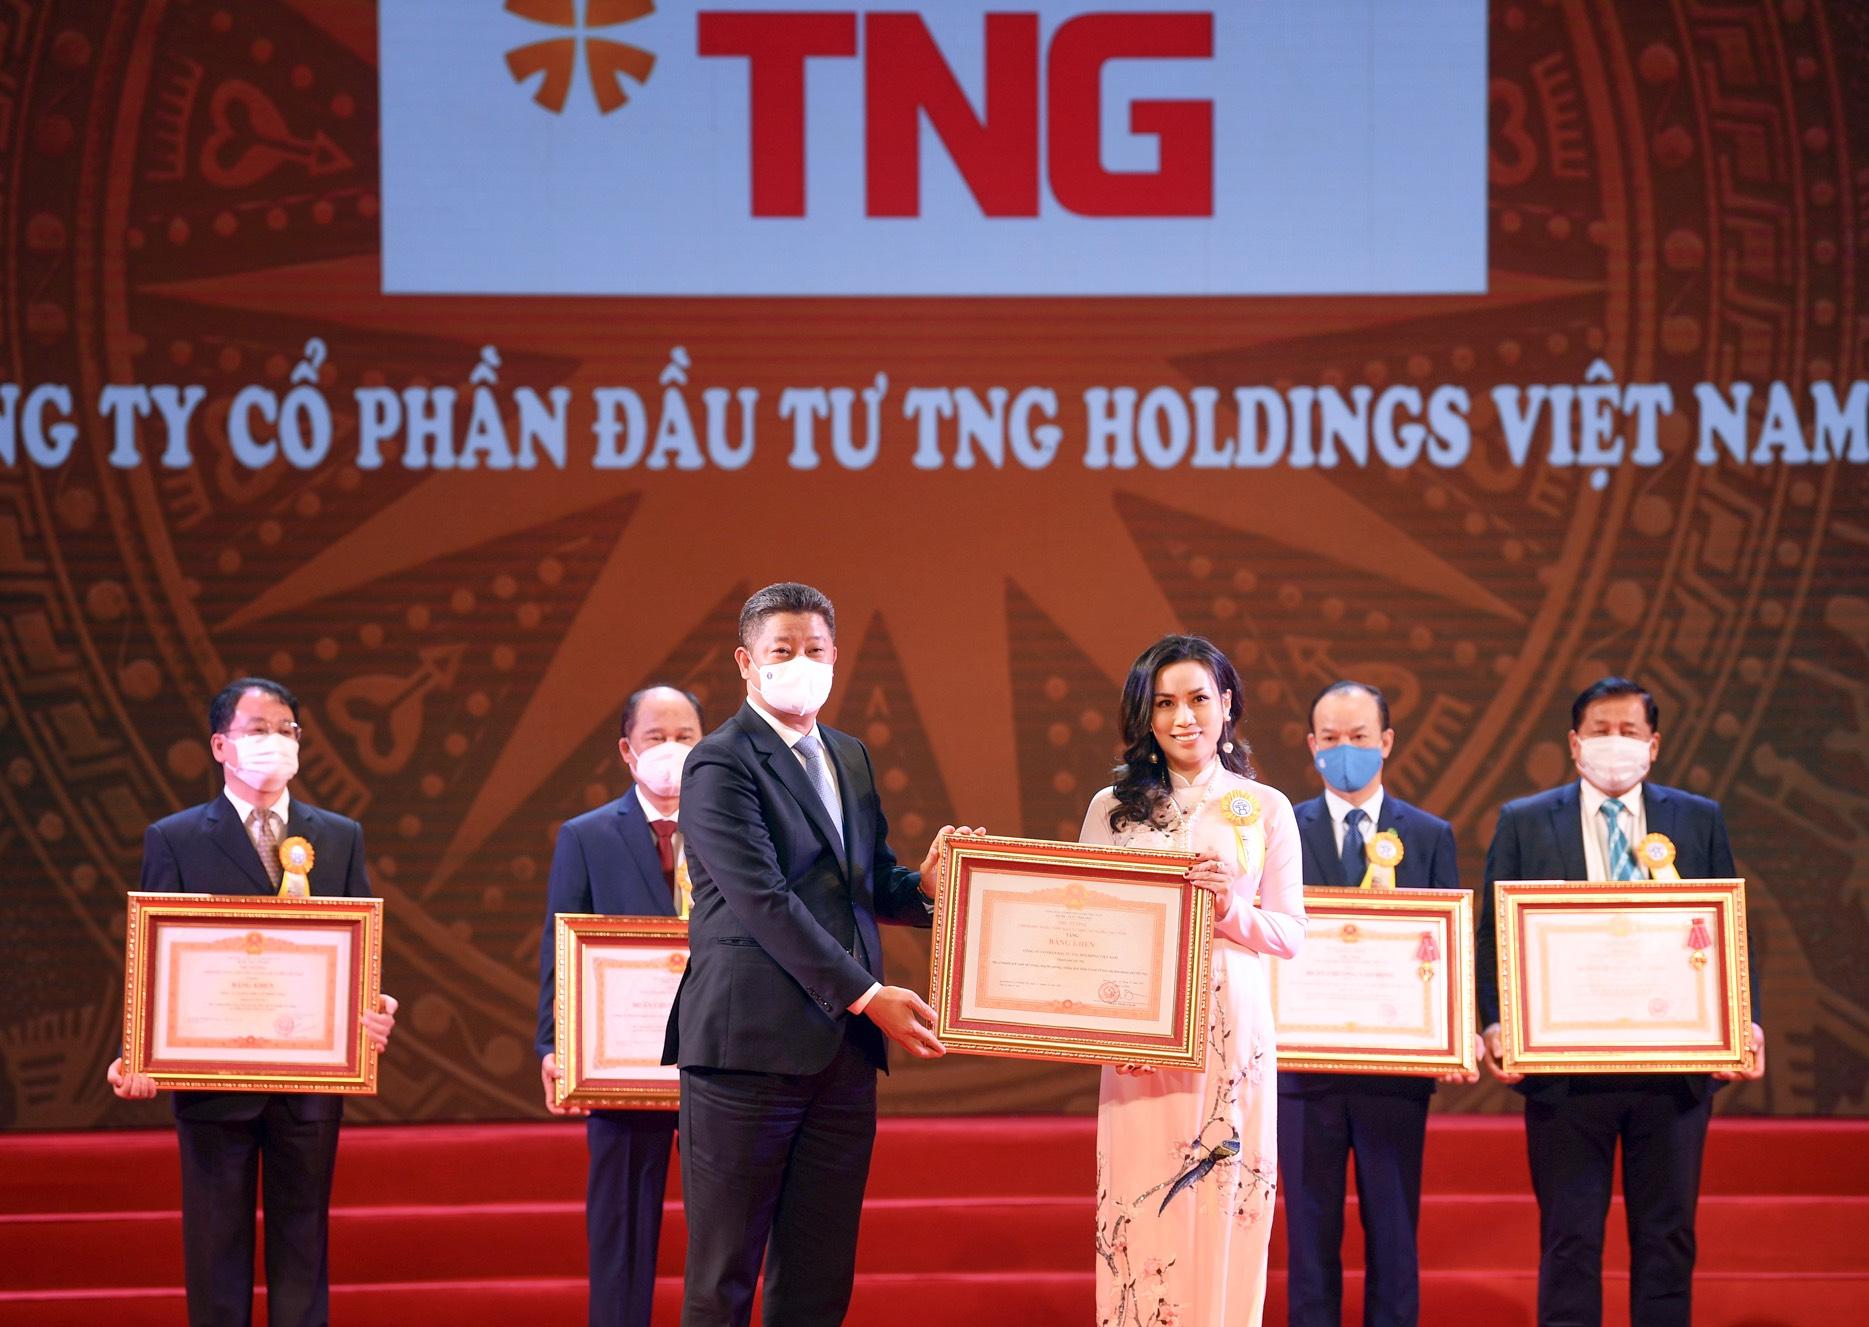 Tng Holdings Vietnam Những đóng Góp Từ Trái Tim đến Bằng Khen Của Thủ Tướng 